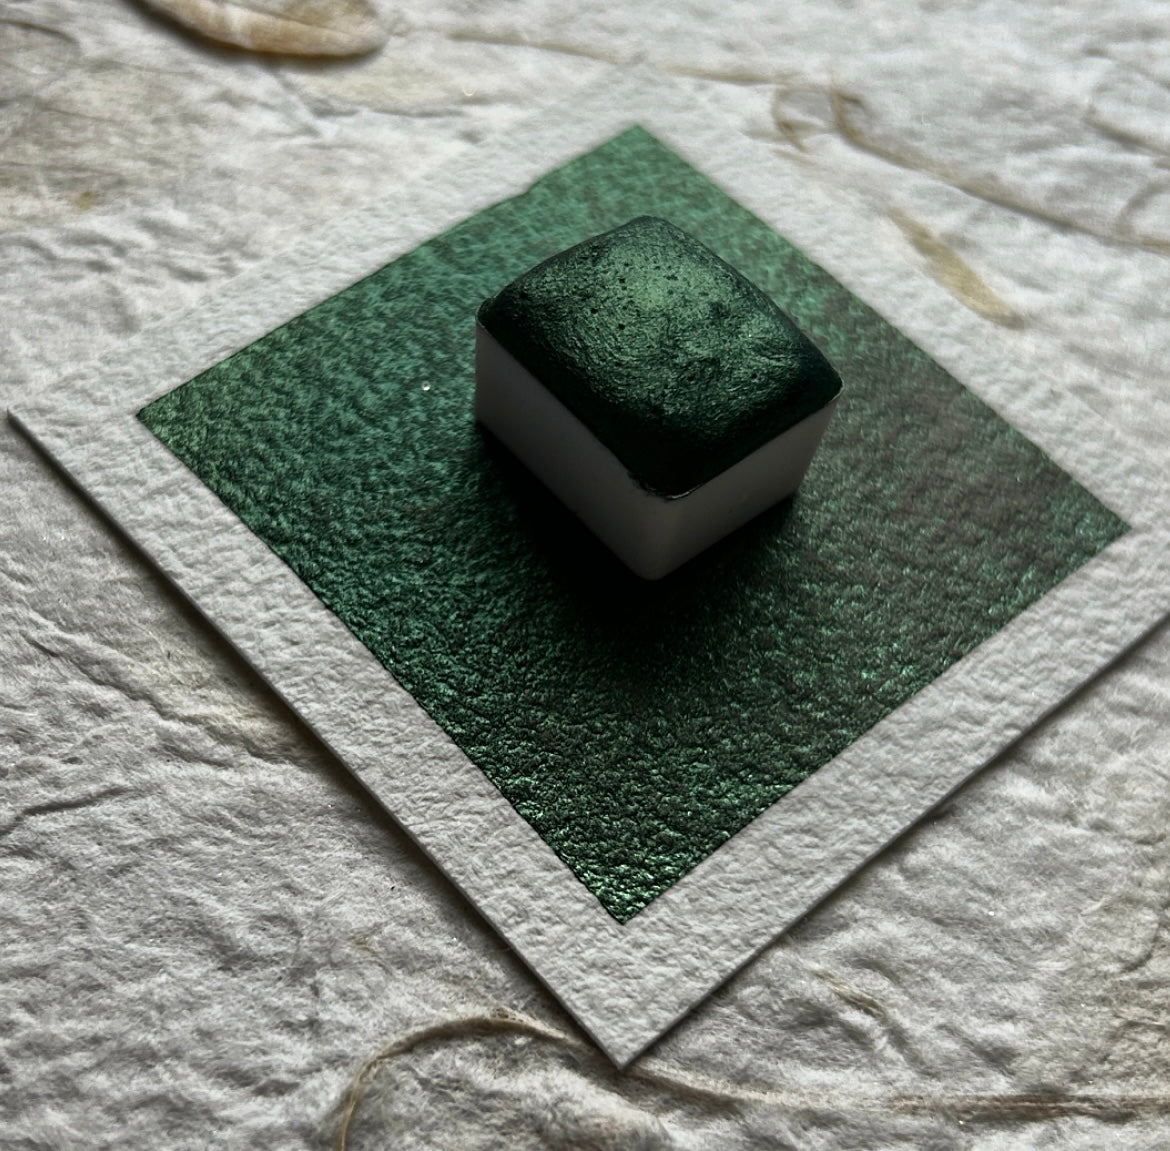 NEW VERSION "Boreal Green" - Dark Green Shimmer - Individual Half Pan